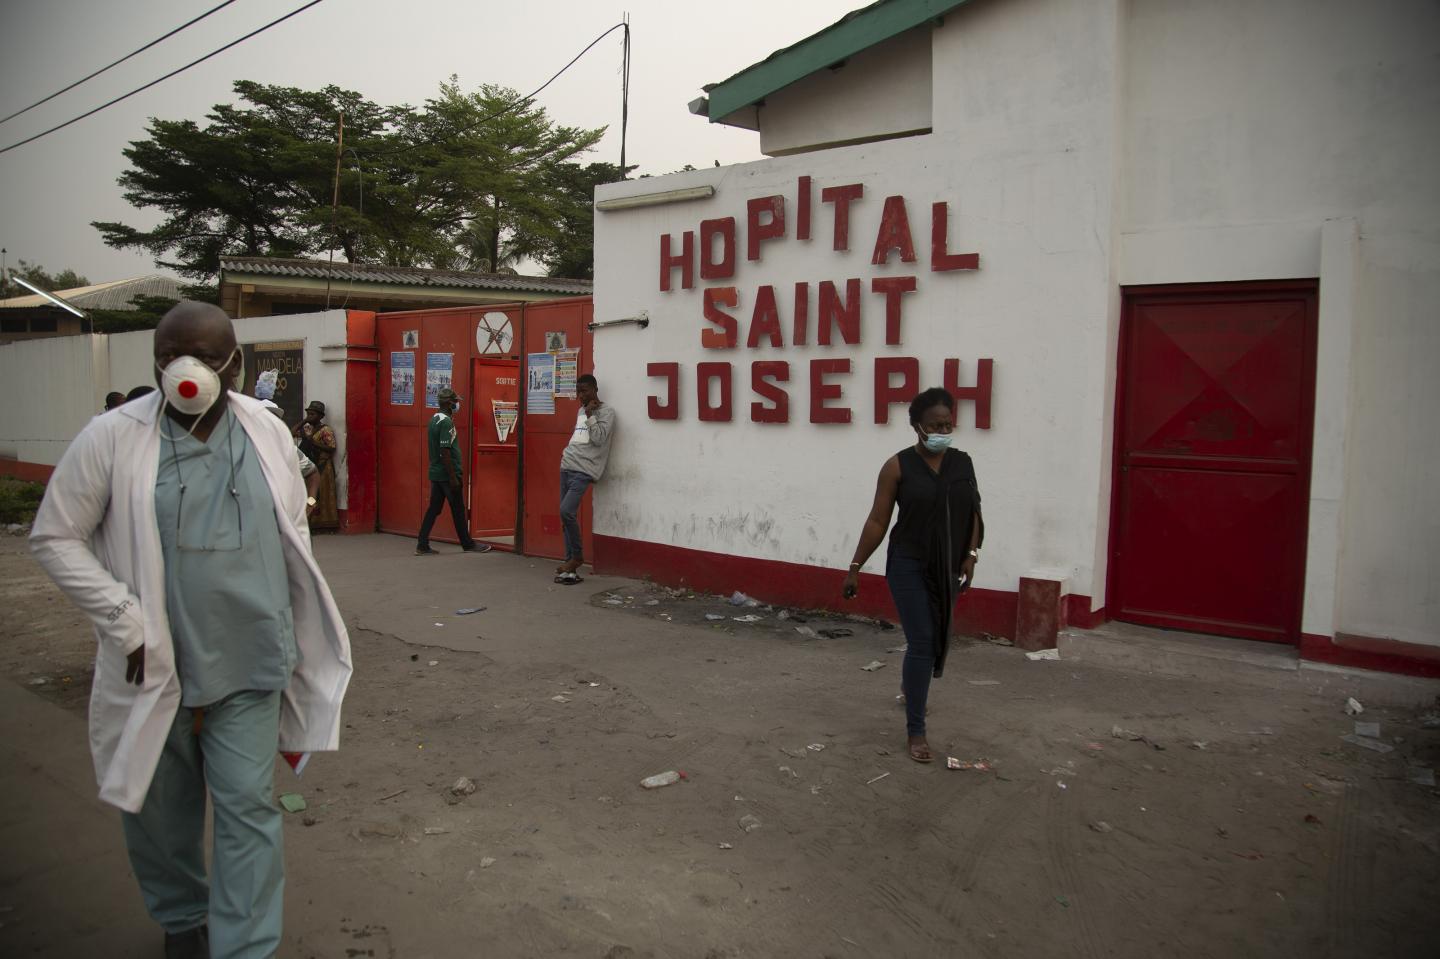 Hospital Saint Joseph, DRC